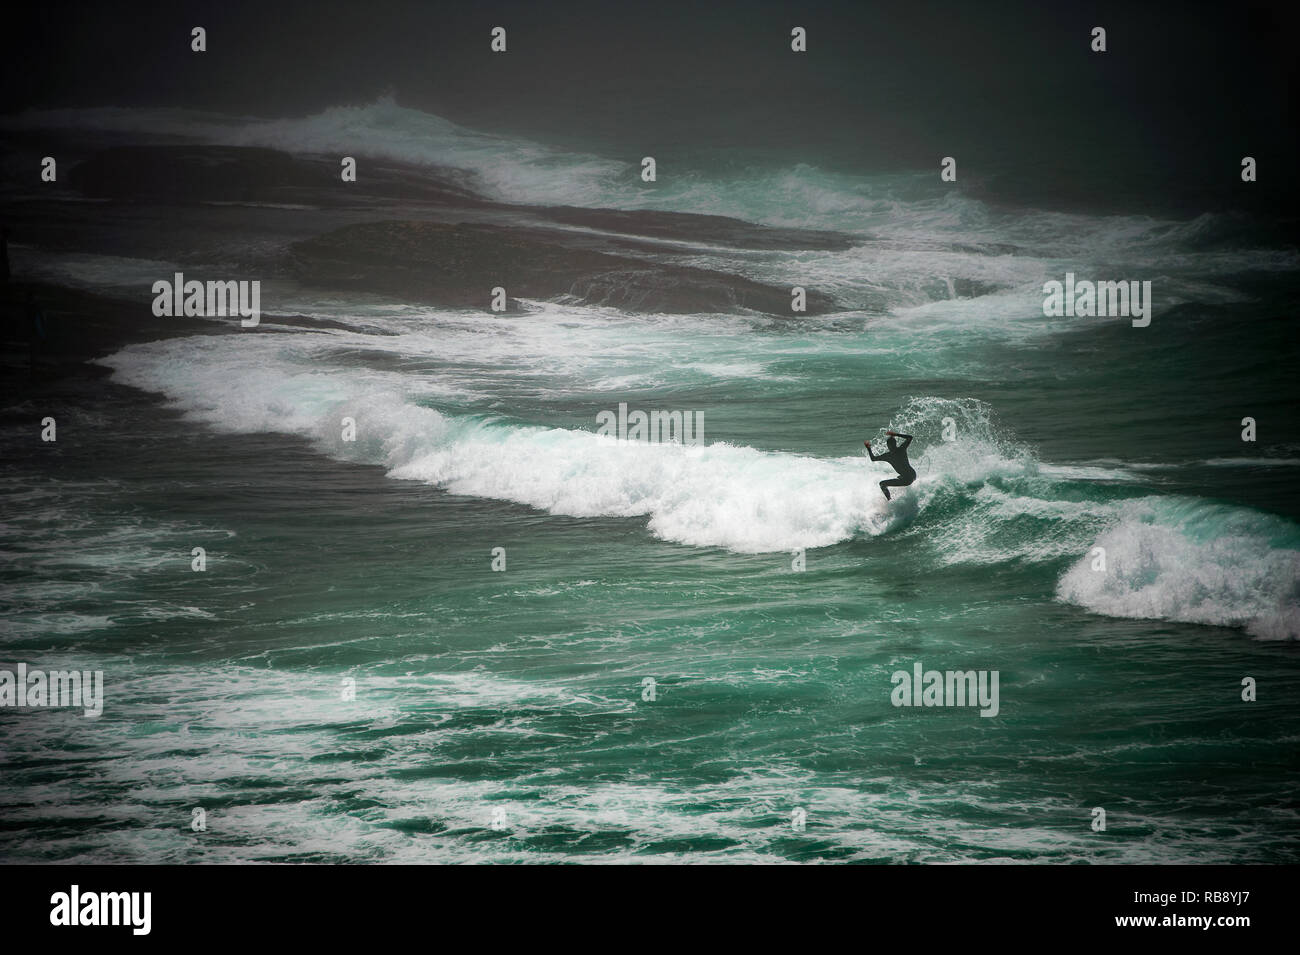 Lone surfer les vagues d'équitation à Bondi Beach, Sydney, Australie. Paysage marin spectaculaire avec brouillard étrange enveloppant la scène Banque D'Images